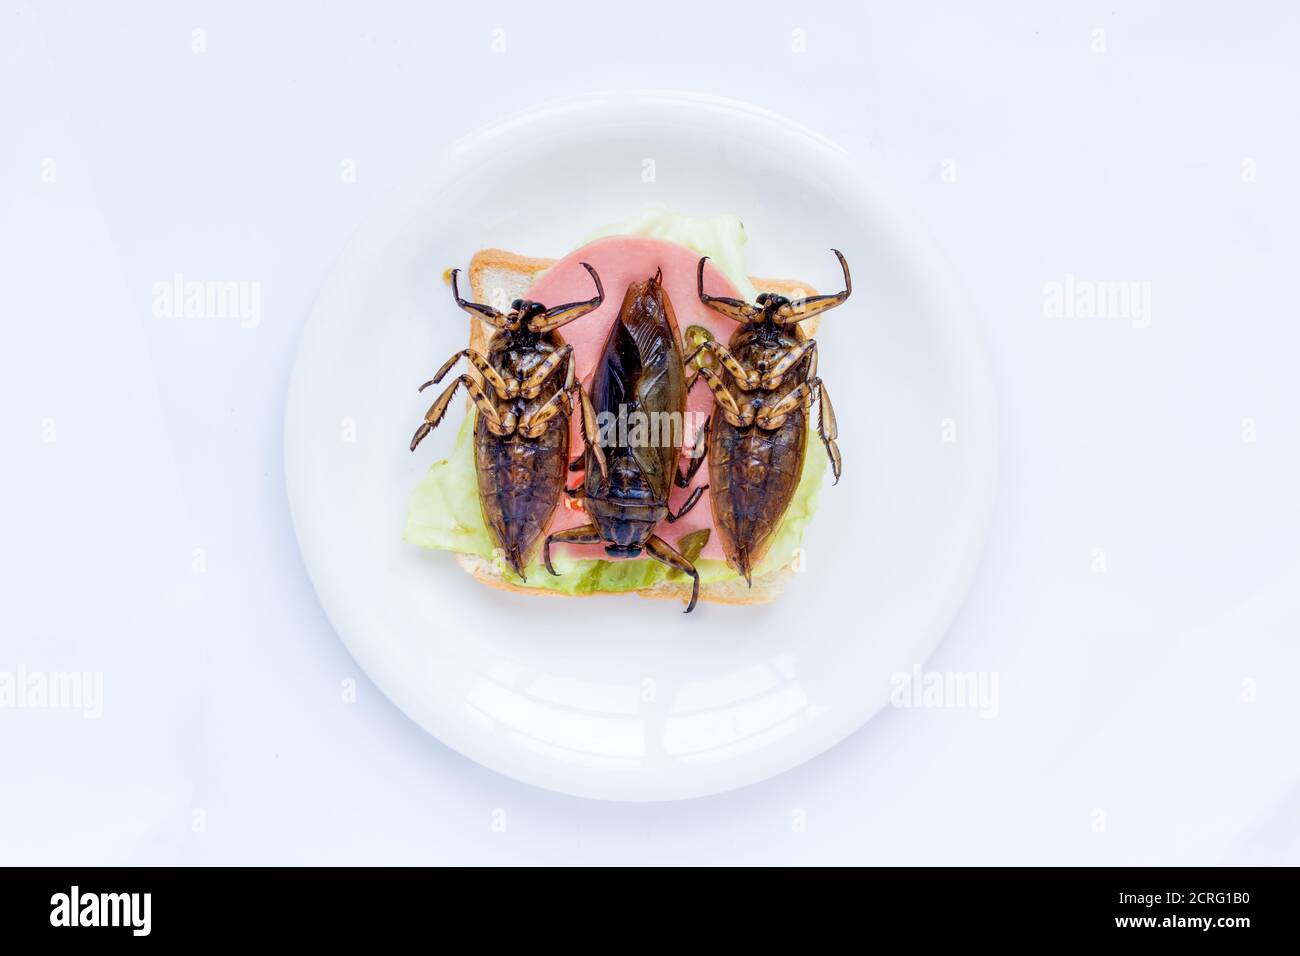 Un escarabajo grande en una tostada en un plato. Oferta de insectos comestibles - cucaracha frita en pan tostado Foto de stock